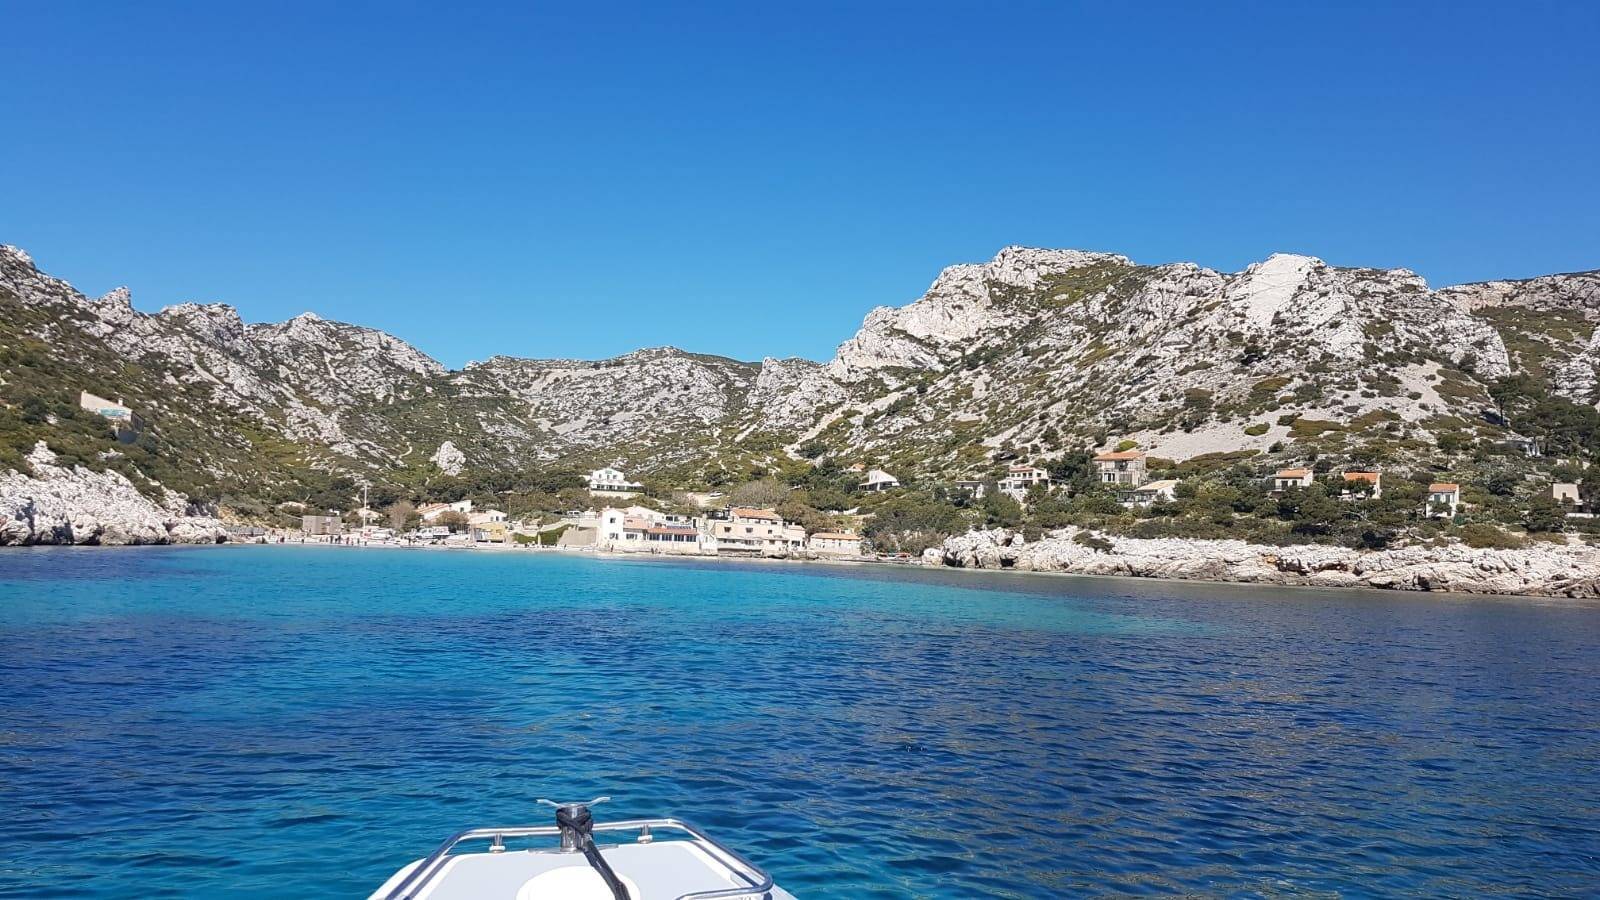 Location de bateau pour visite privée et baignade dans les Calanques de Sormiou à Marseille